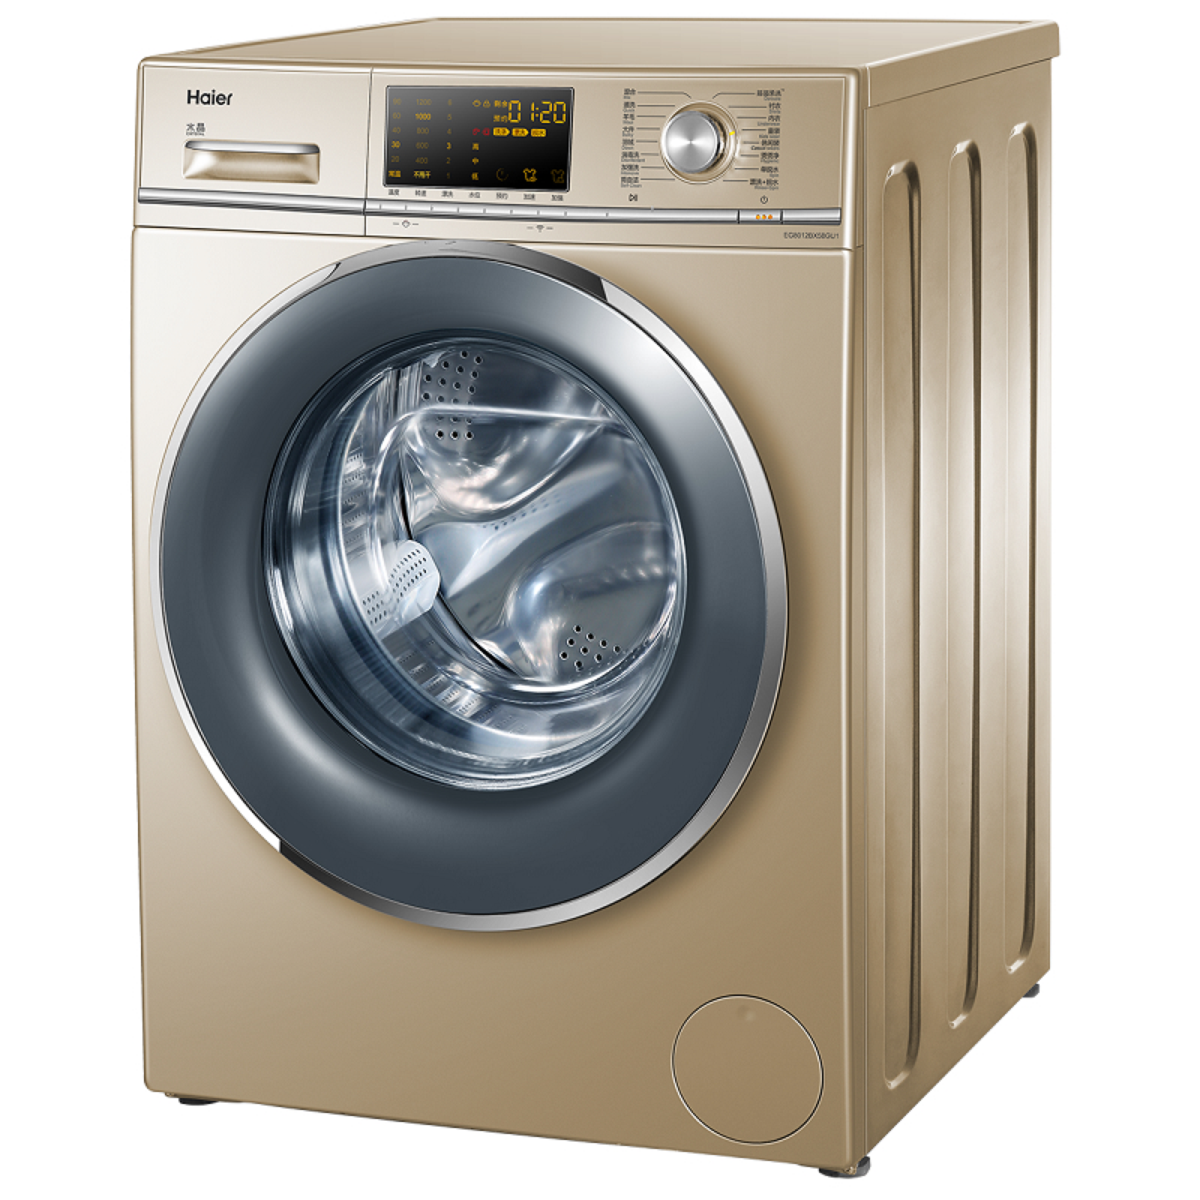 洗衣机选购需要注意哪些参数？-洗衣机-ZOL问答